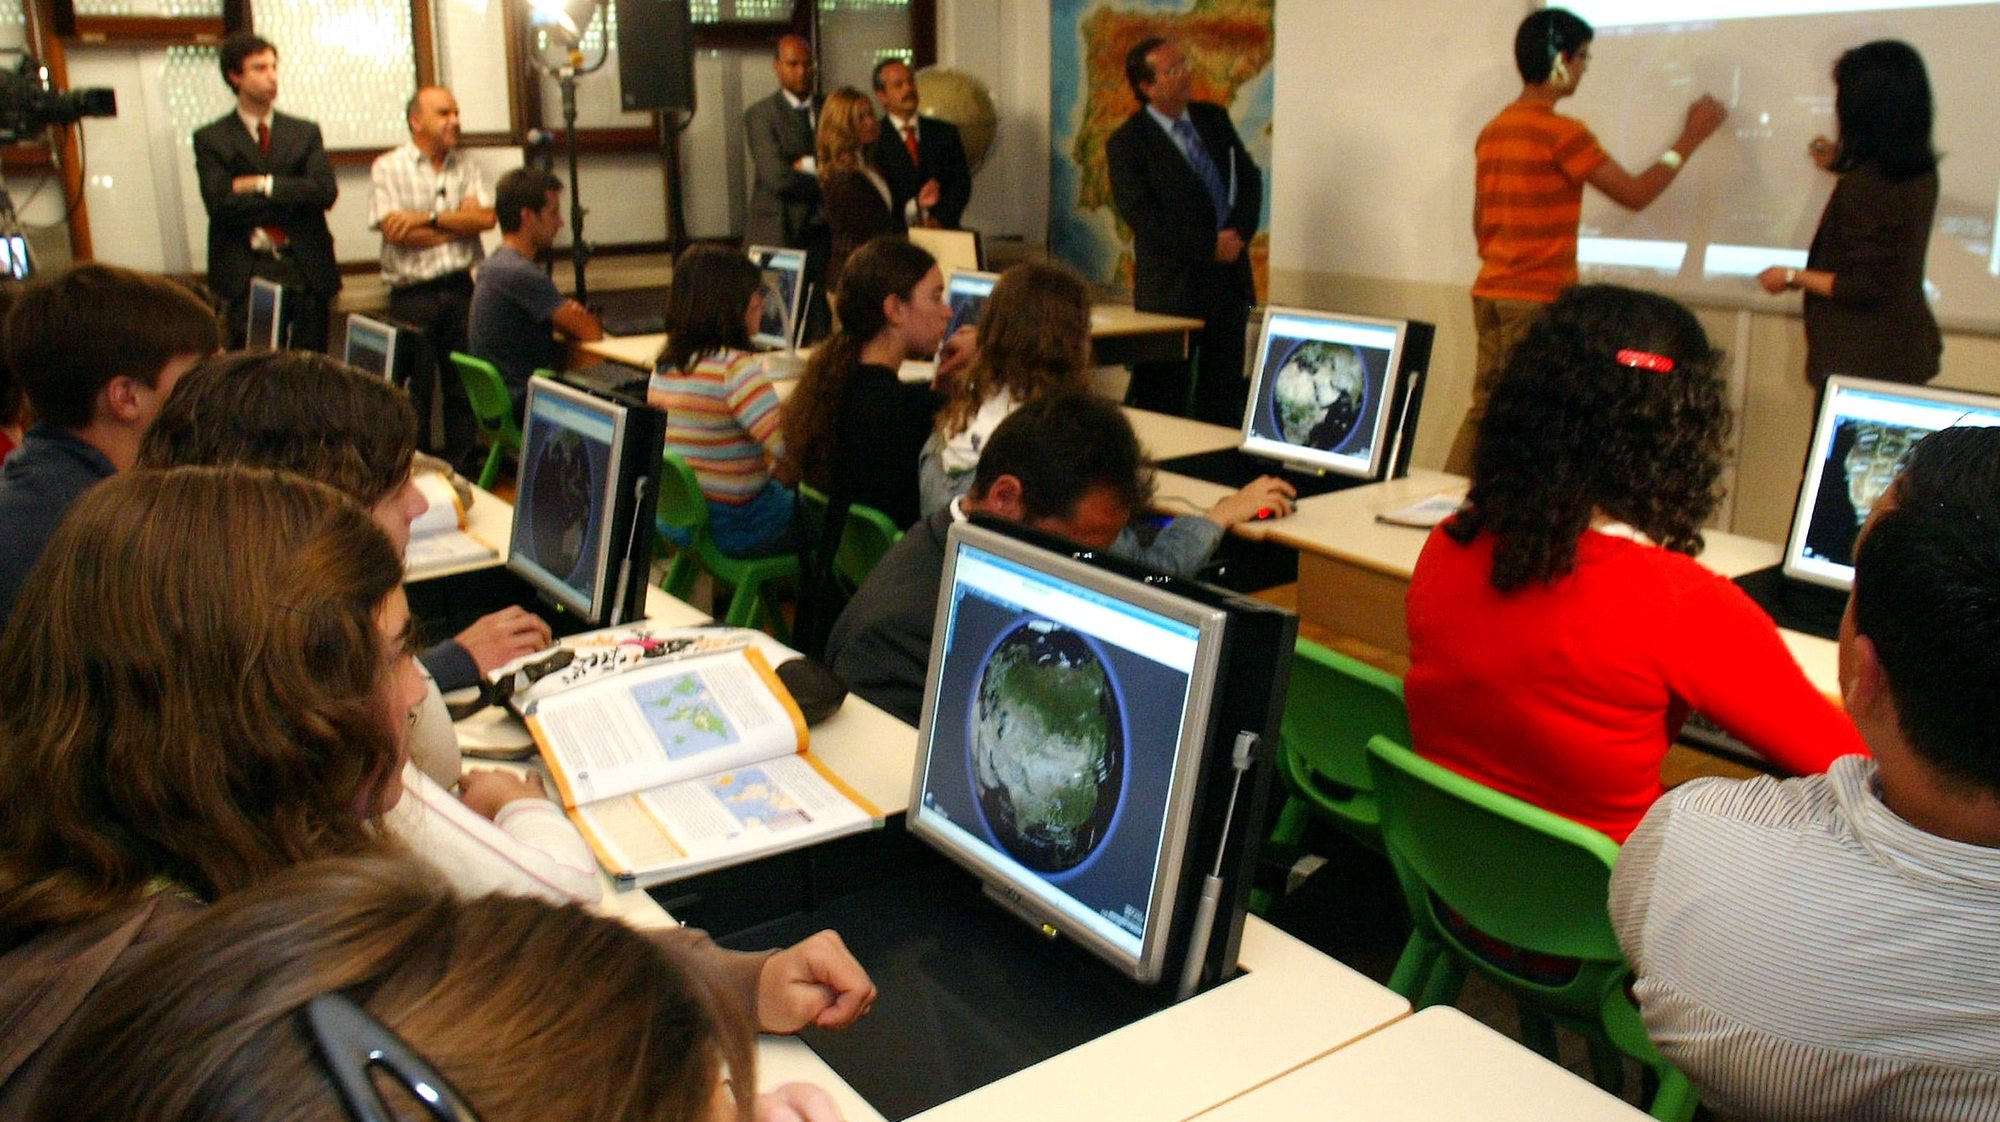 Uma aluna assiste a uma aula de geografia com utilizacao de computadores, na Escola Andre Gouveia, integrada no Projecto Piloto no âmbito do Plano Tecnológico Escolas, 16 de Junho de 2008,em Évora. NUNO VEIGA/LUSA